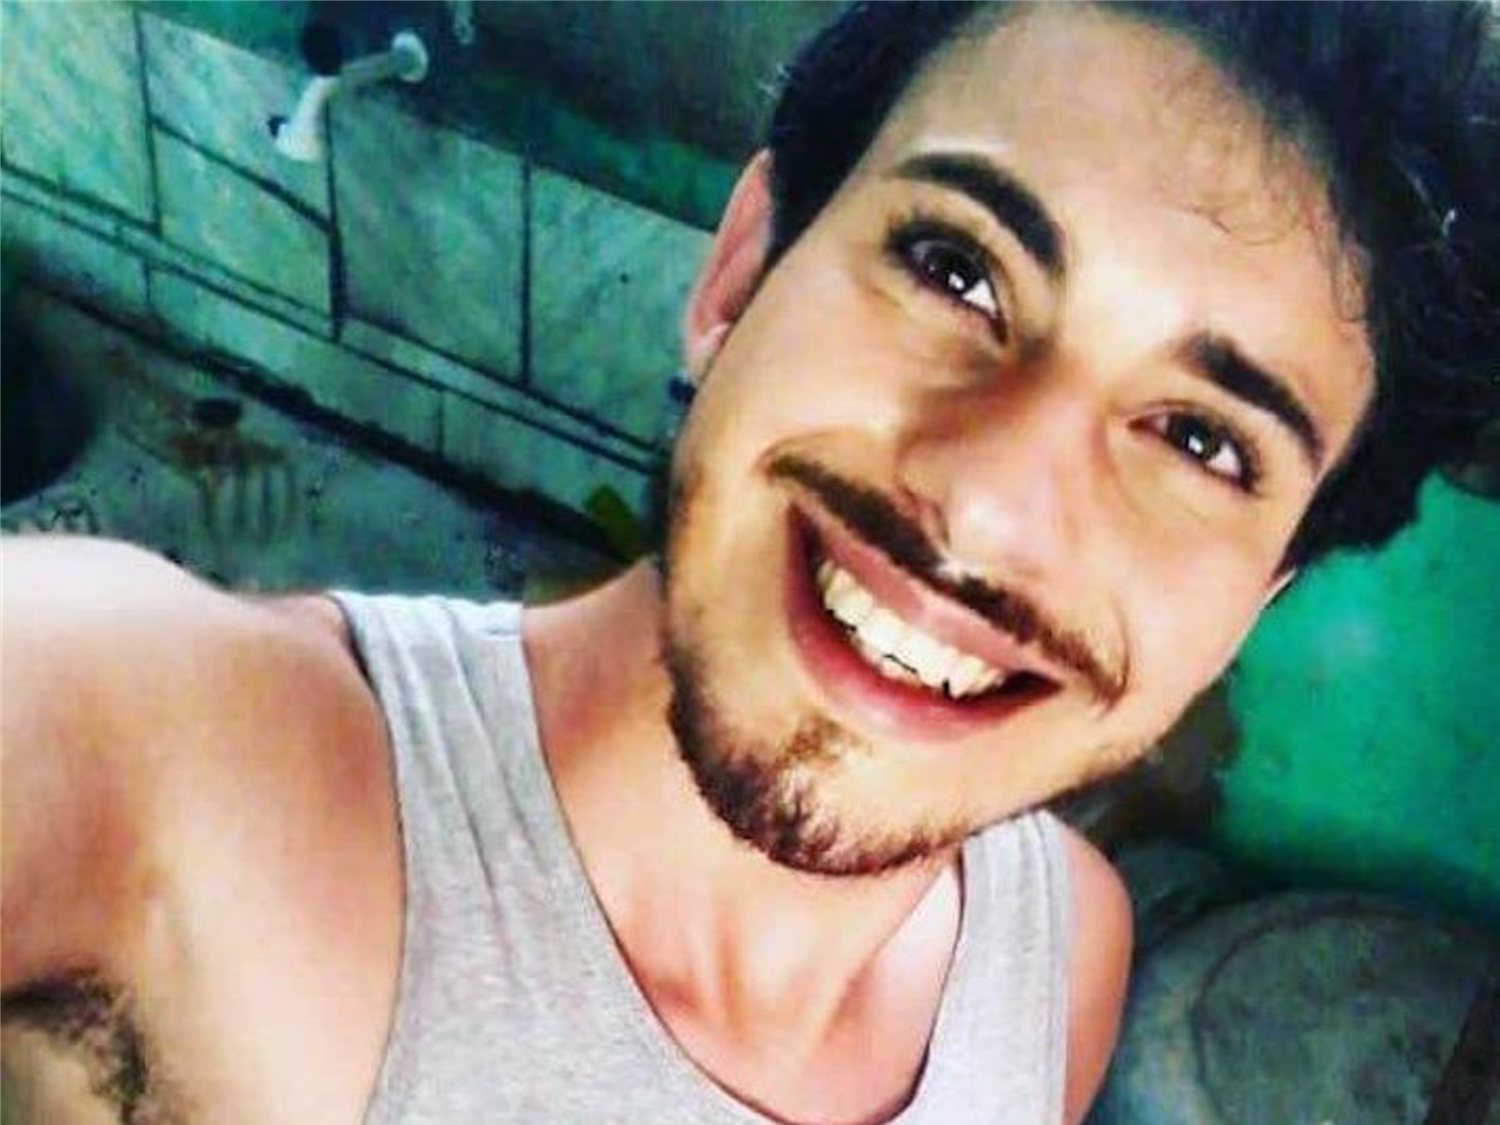 Un joven brasileño de 22 años, en estado vegetativo permanente tras una agresión homófoba